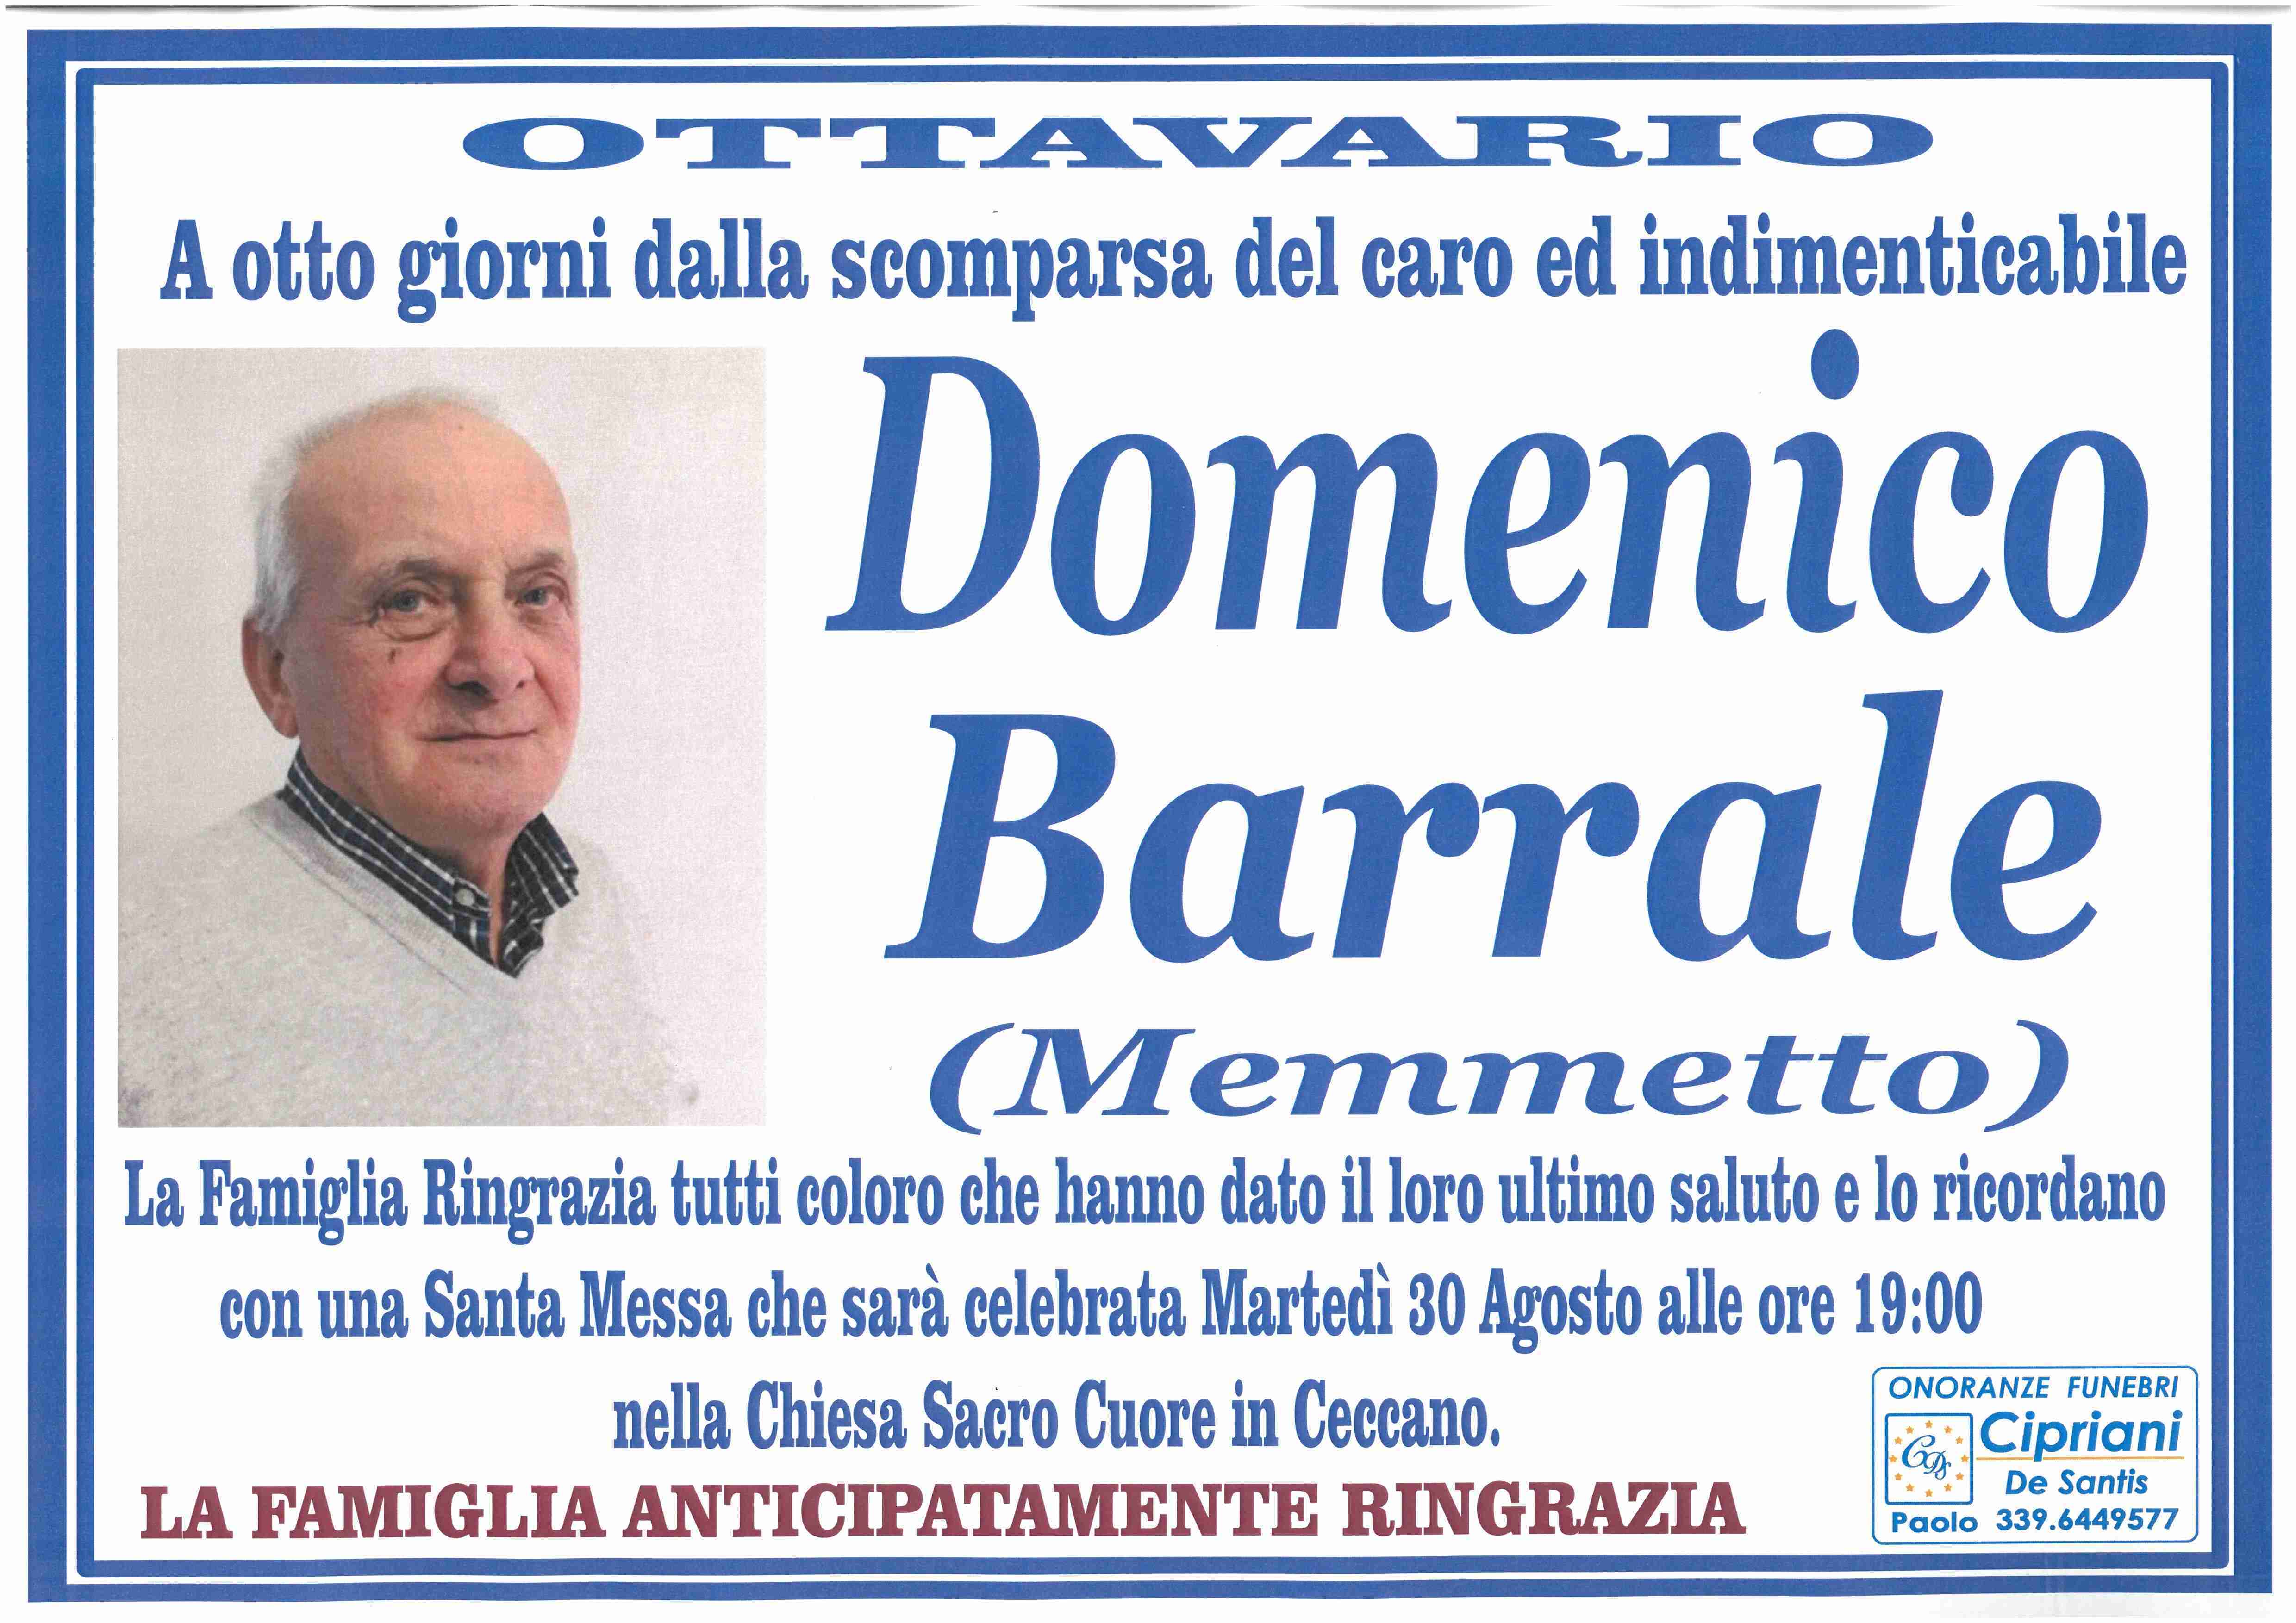 Domenico Barrale